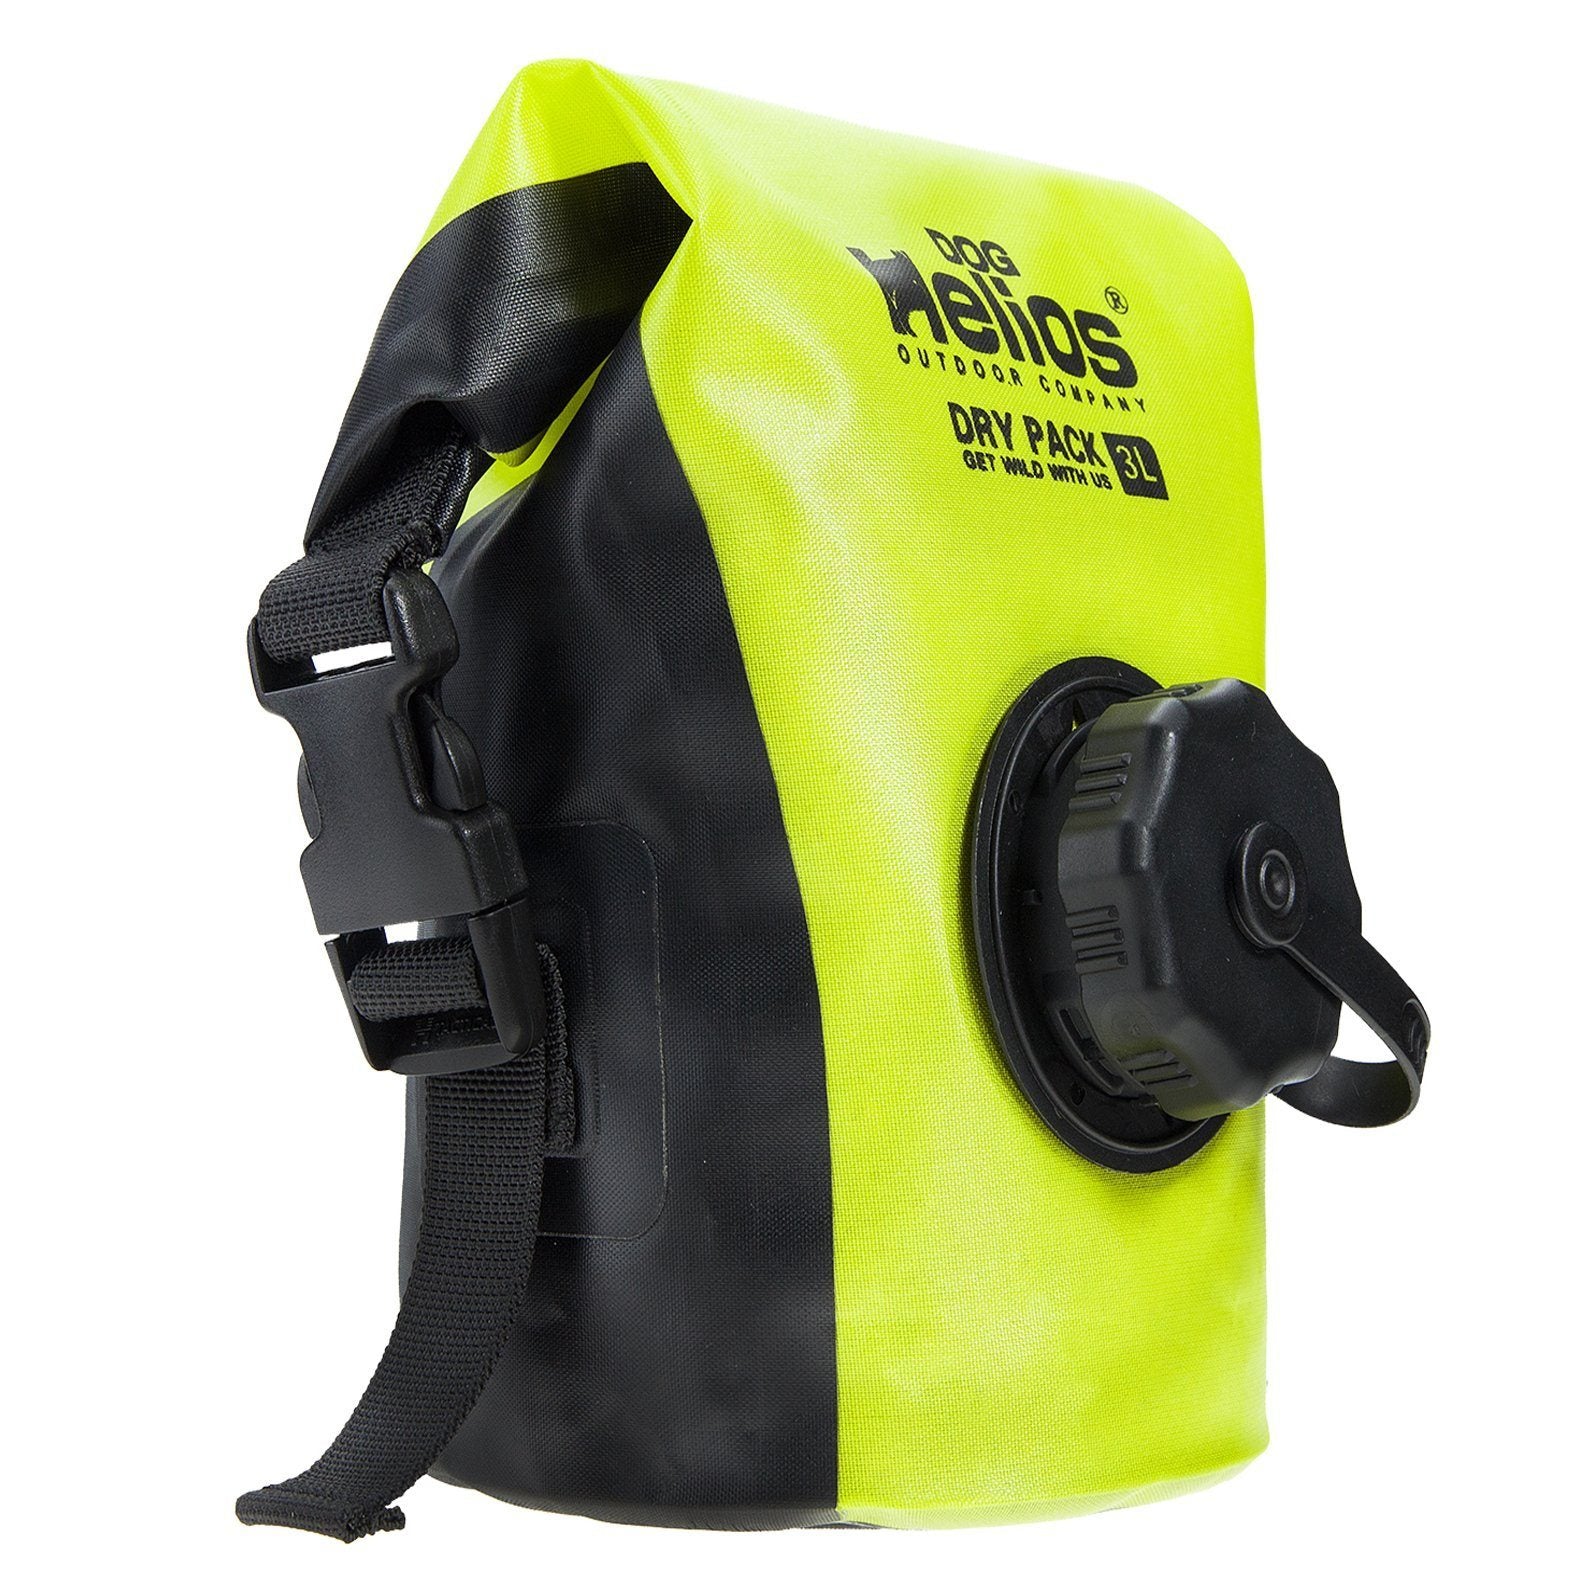 Dog Helios 'Grazer' Waterproof Outdoor Travel Dry Food Dispenser Bag  